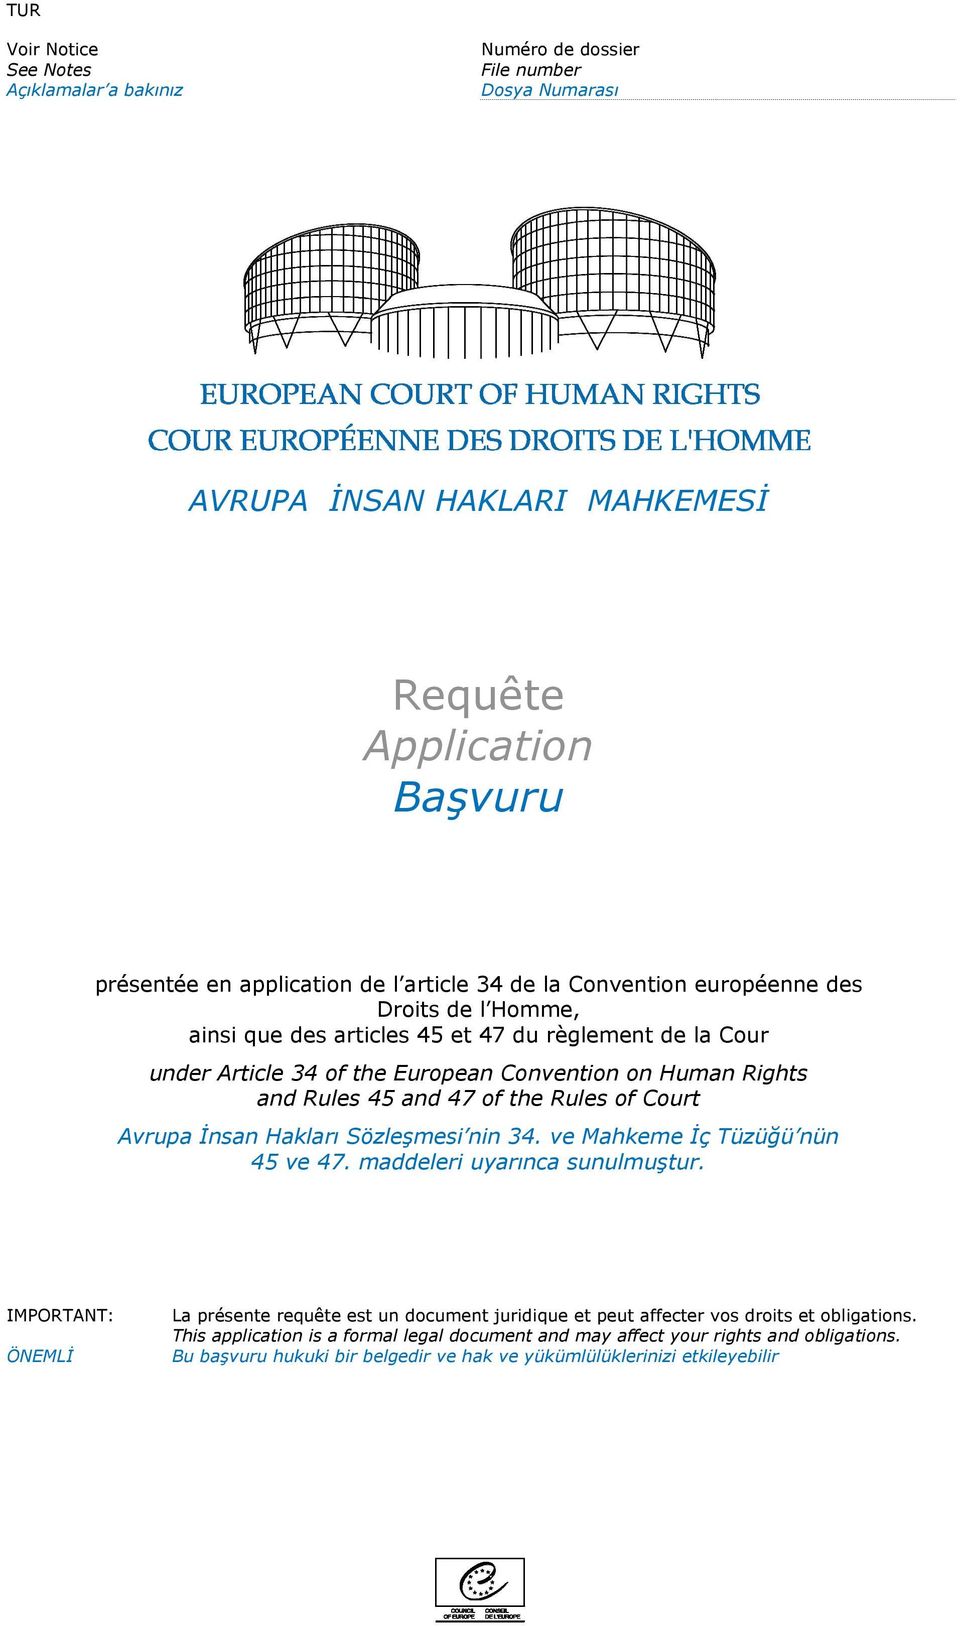 Rules of Court Avrupa İnsan Hakları Sözleşmesi nin 34. ve Mahkeme İç Tüzüğü nün 45 ve 47. maddeleri uyarınca sunulmuştur.